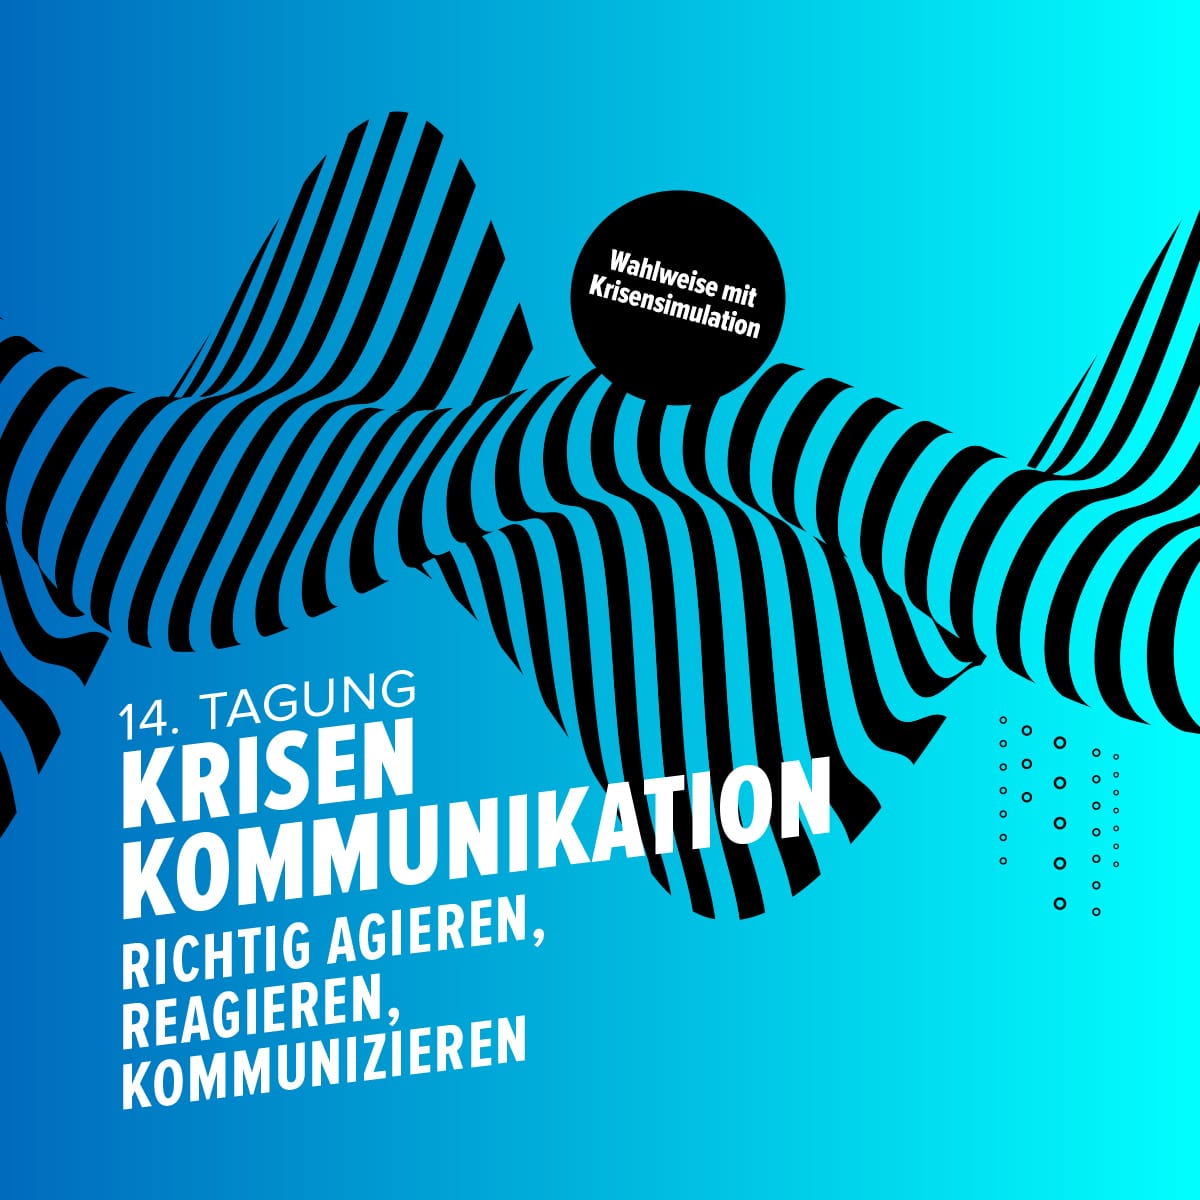 Tagung Krisenkommunikation, 28. - 29.06.2022, in Berlin